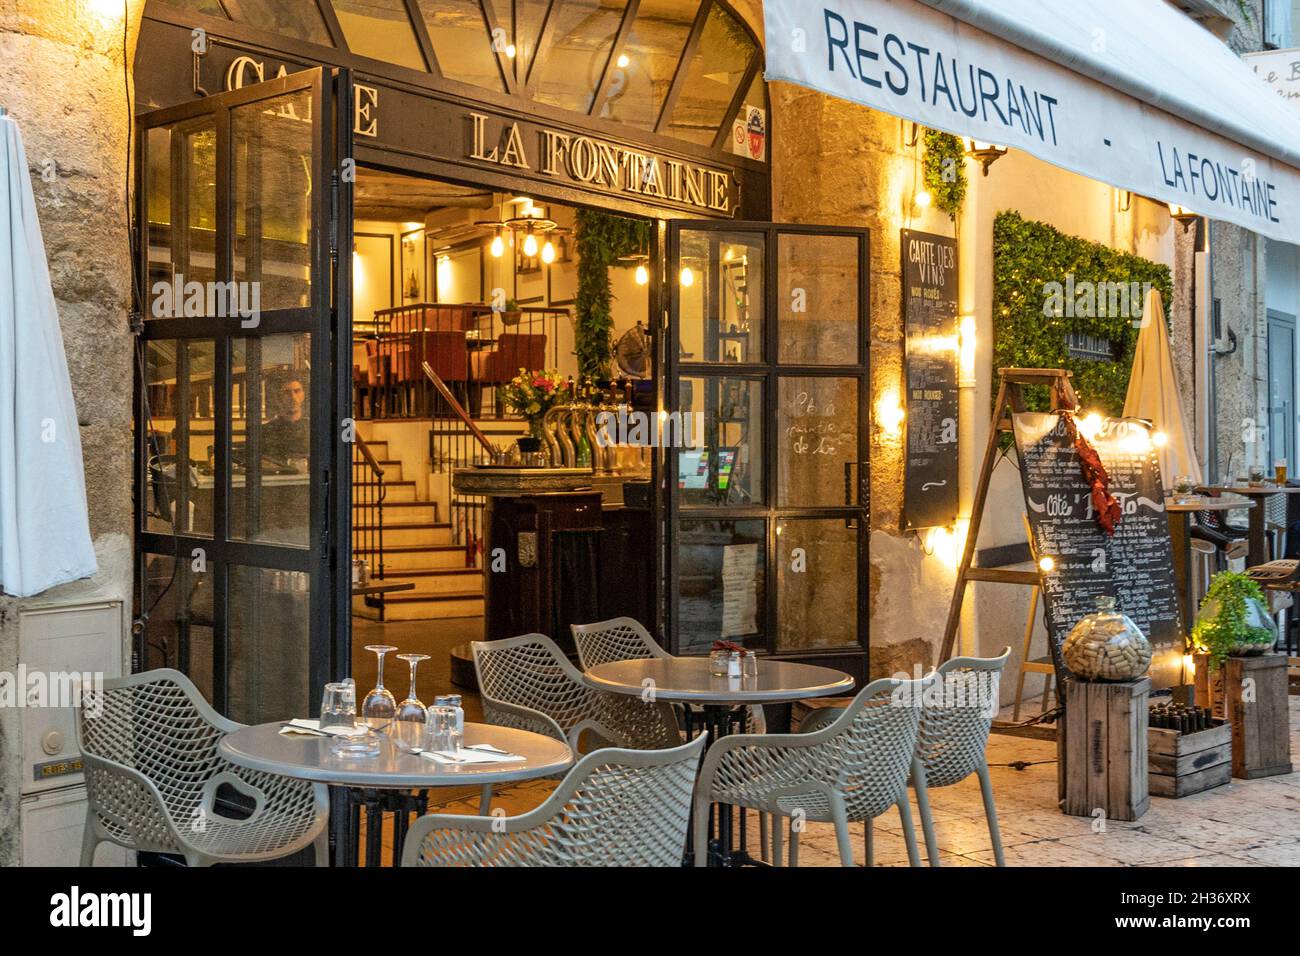 El restaurante La Fontaine en el casco antiguo de Lourmarin Foto de stock